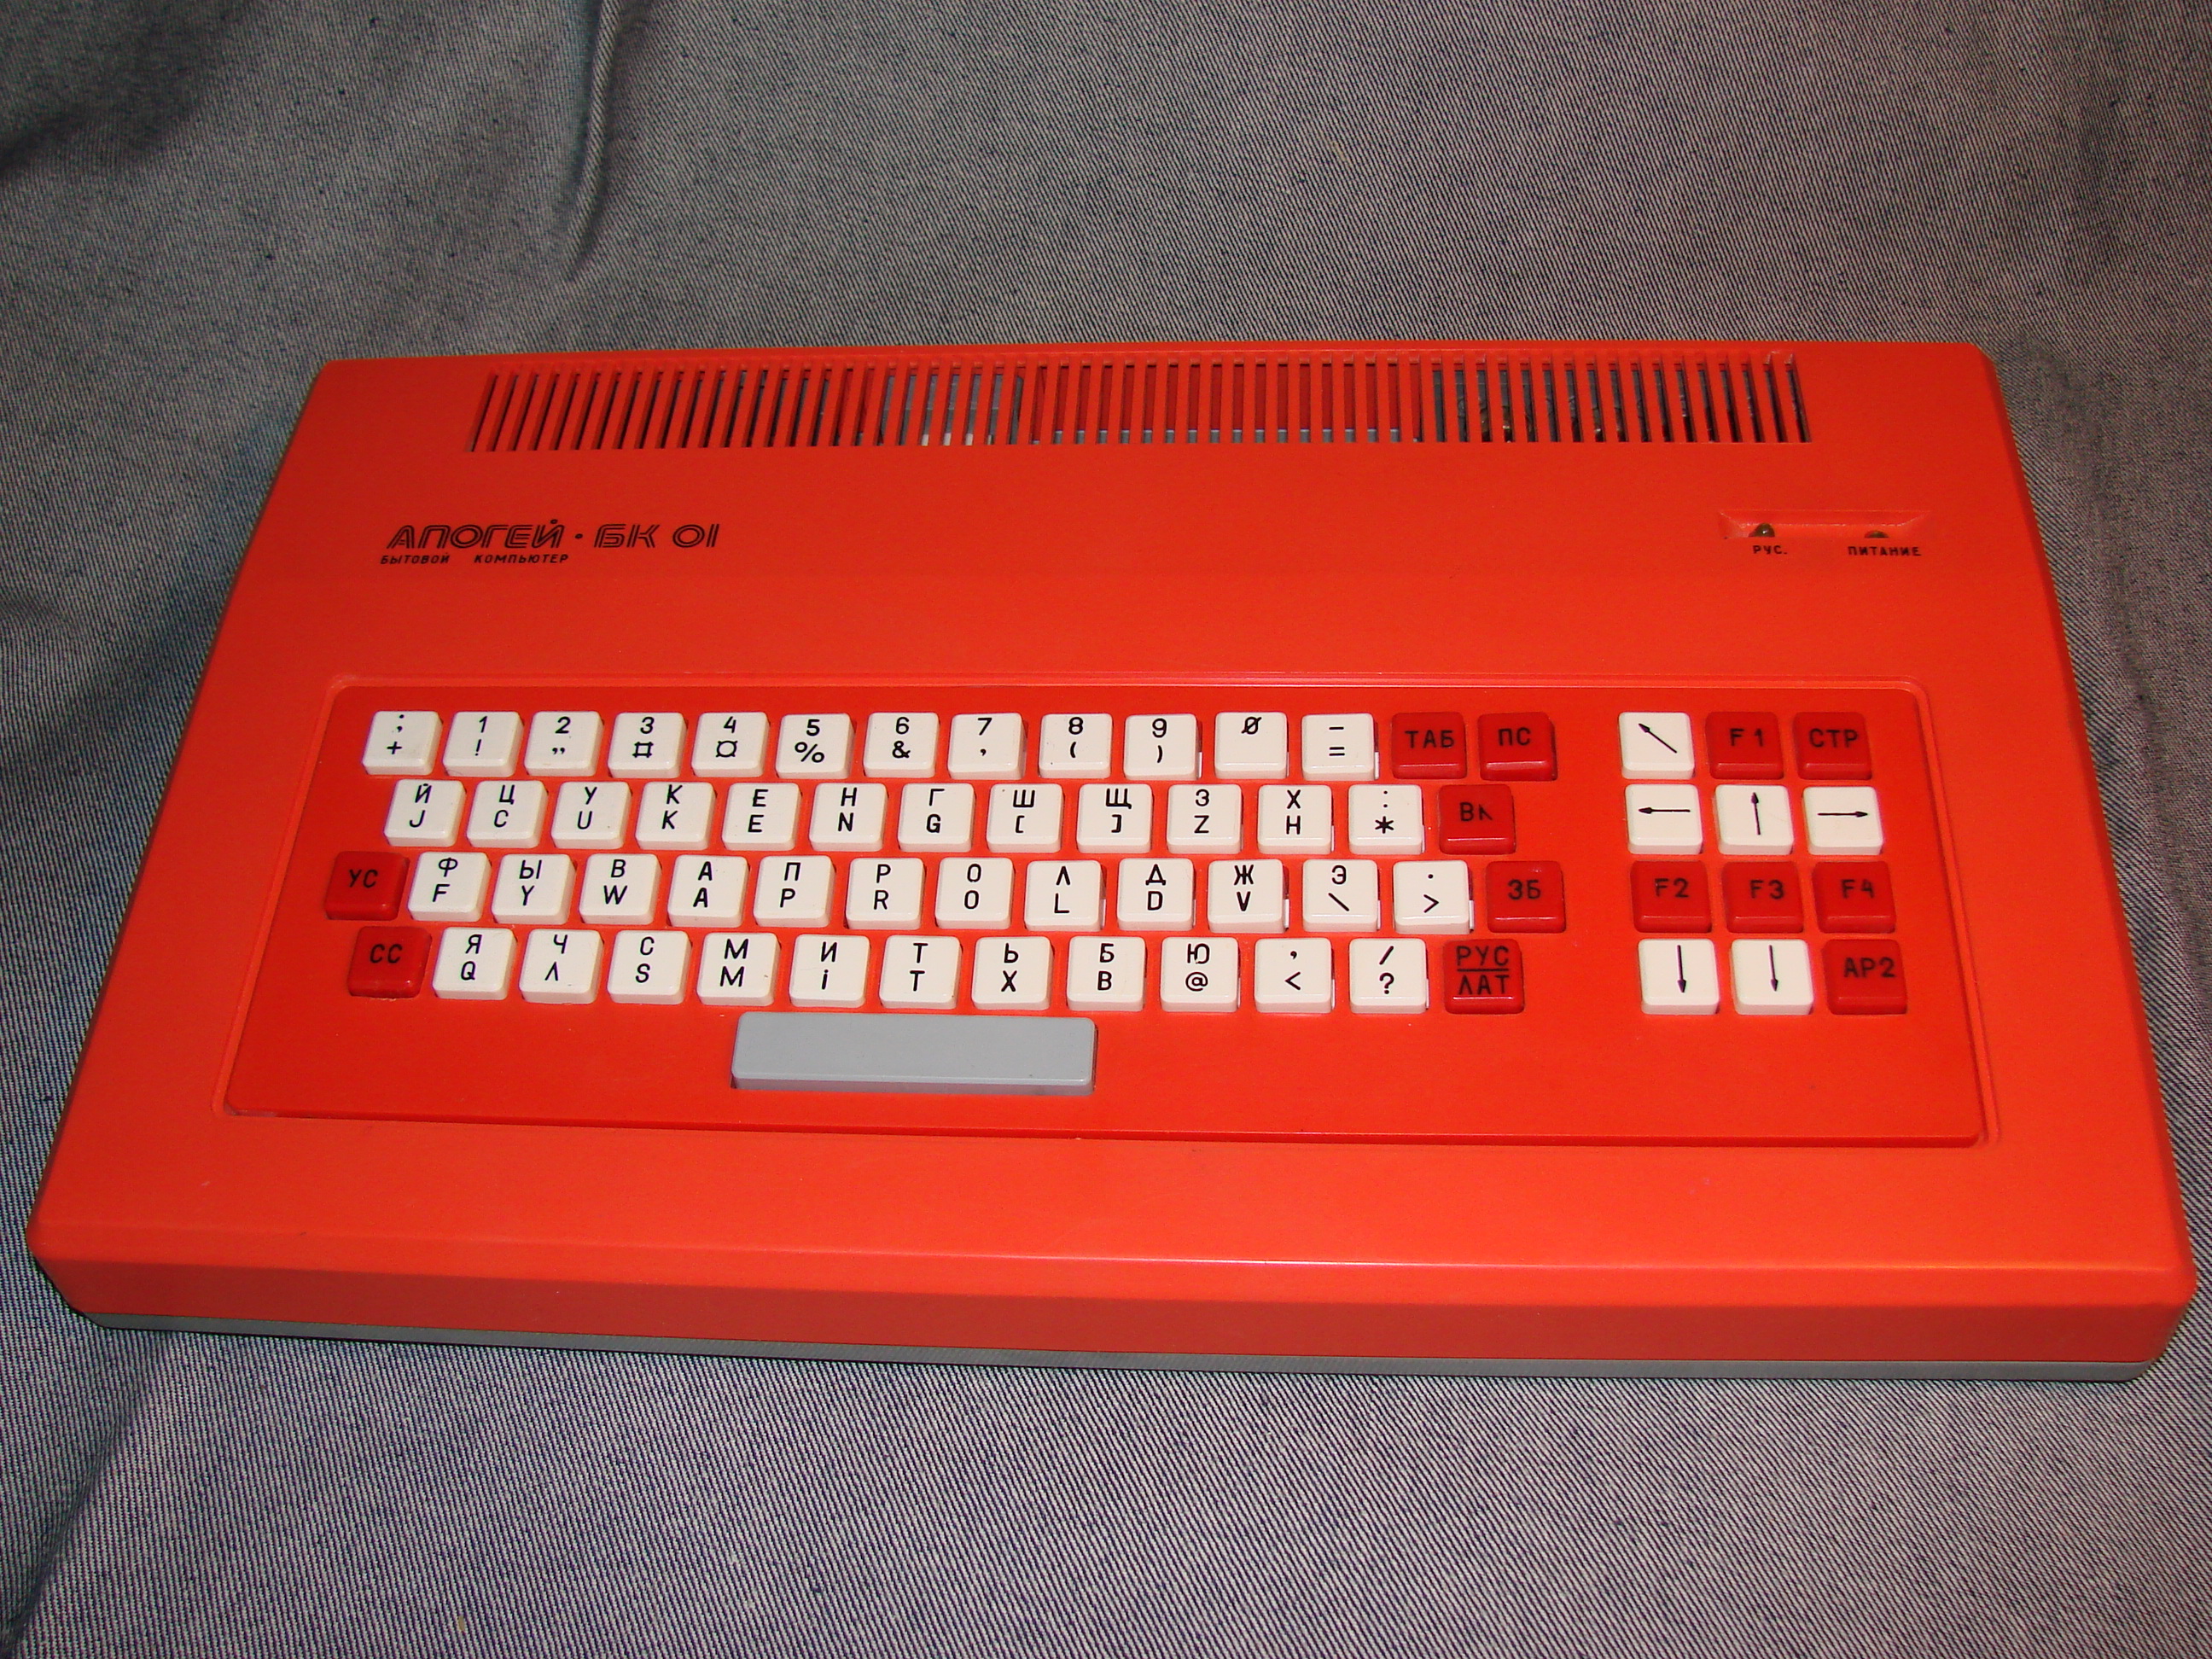 „Апогеј БК-01“ развијен је на бази компјутера „Радио 86РК“, а почео је да се производи 1988. године. За складиштење података користио је аудио-касете или дискете. Није се одликовао напредном технологијом, али је, захваљујући унапређењу процеса производње, имао нижу цену у односу на раније моделе – коштао је 440 рубаља, што су биле две просечне плате у то време.